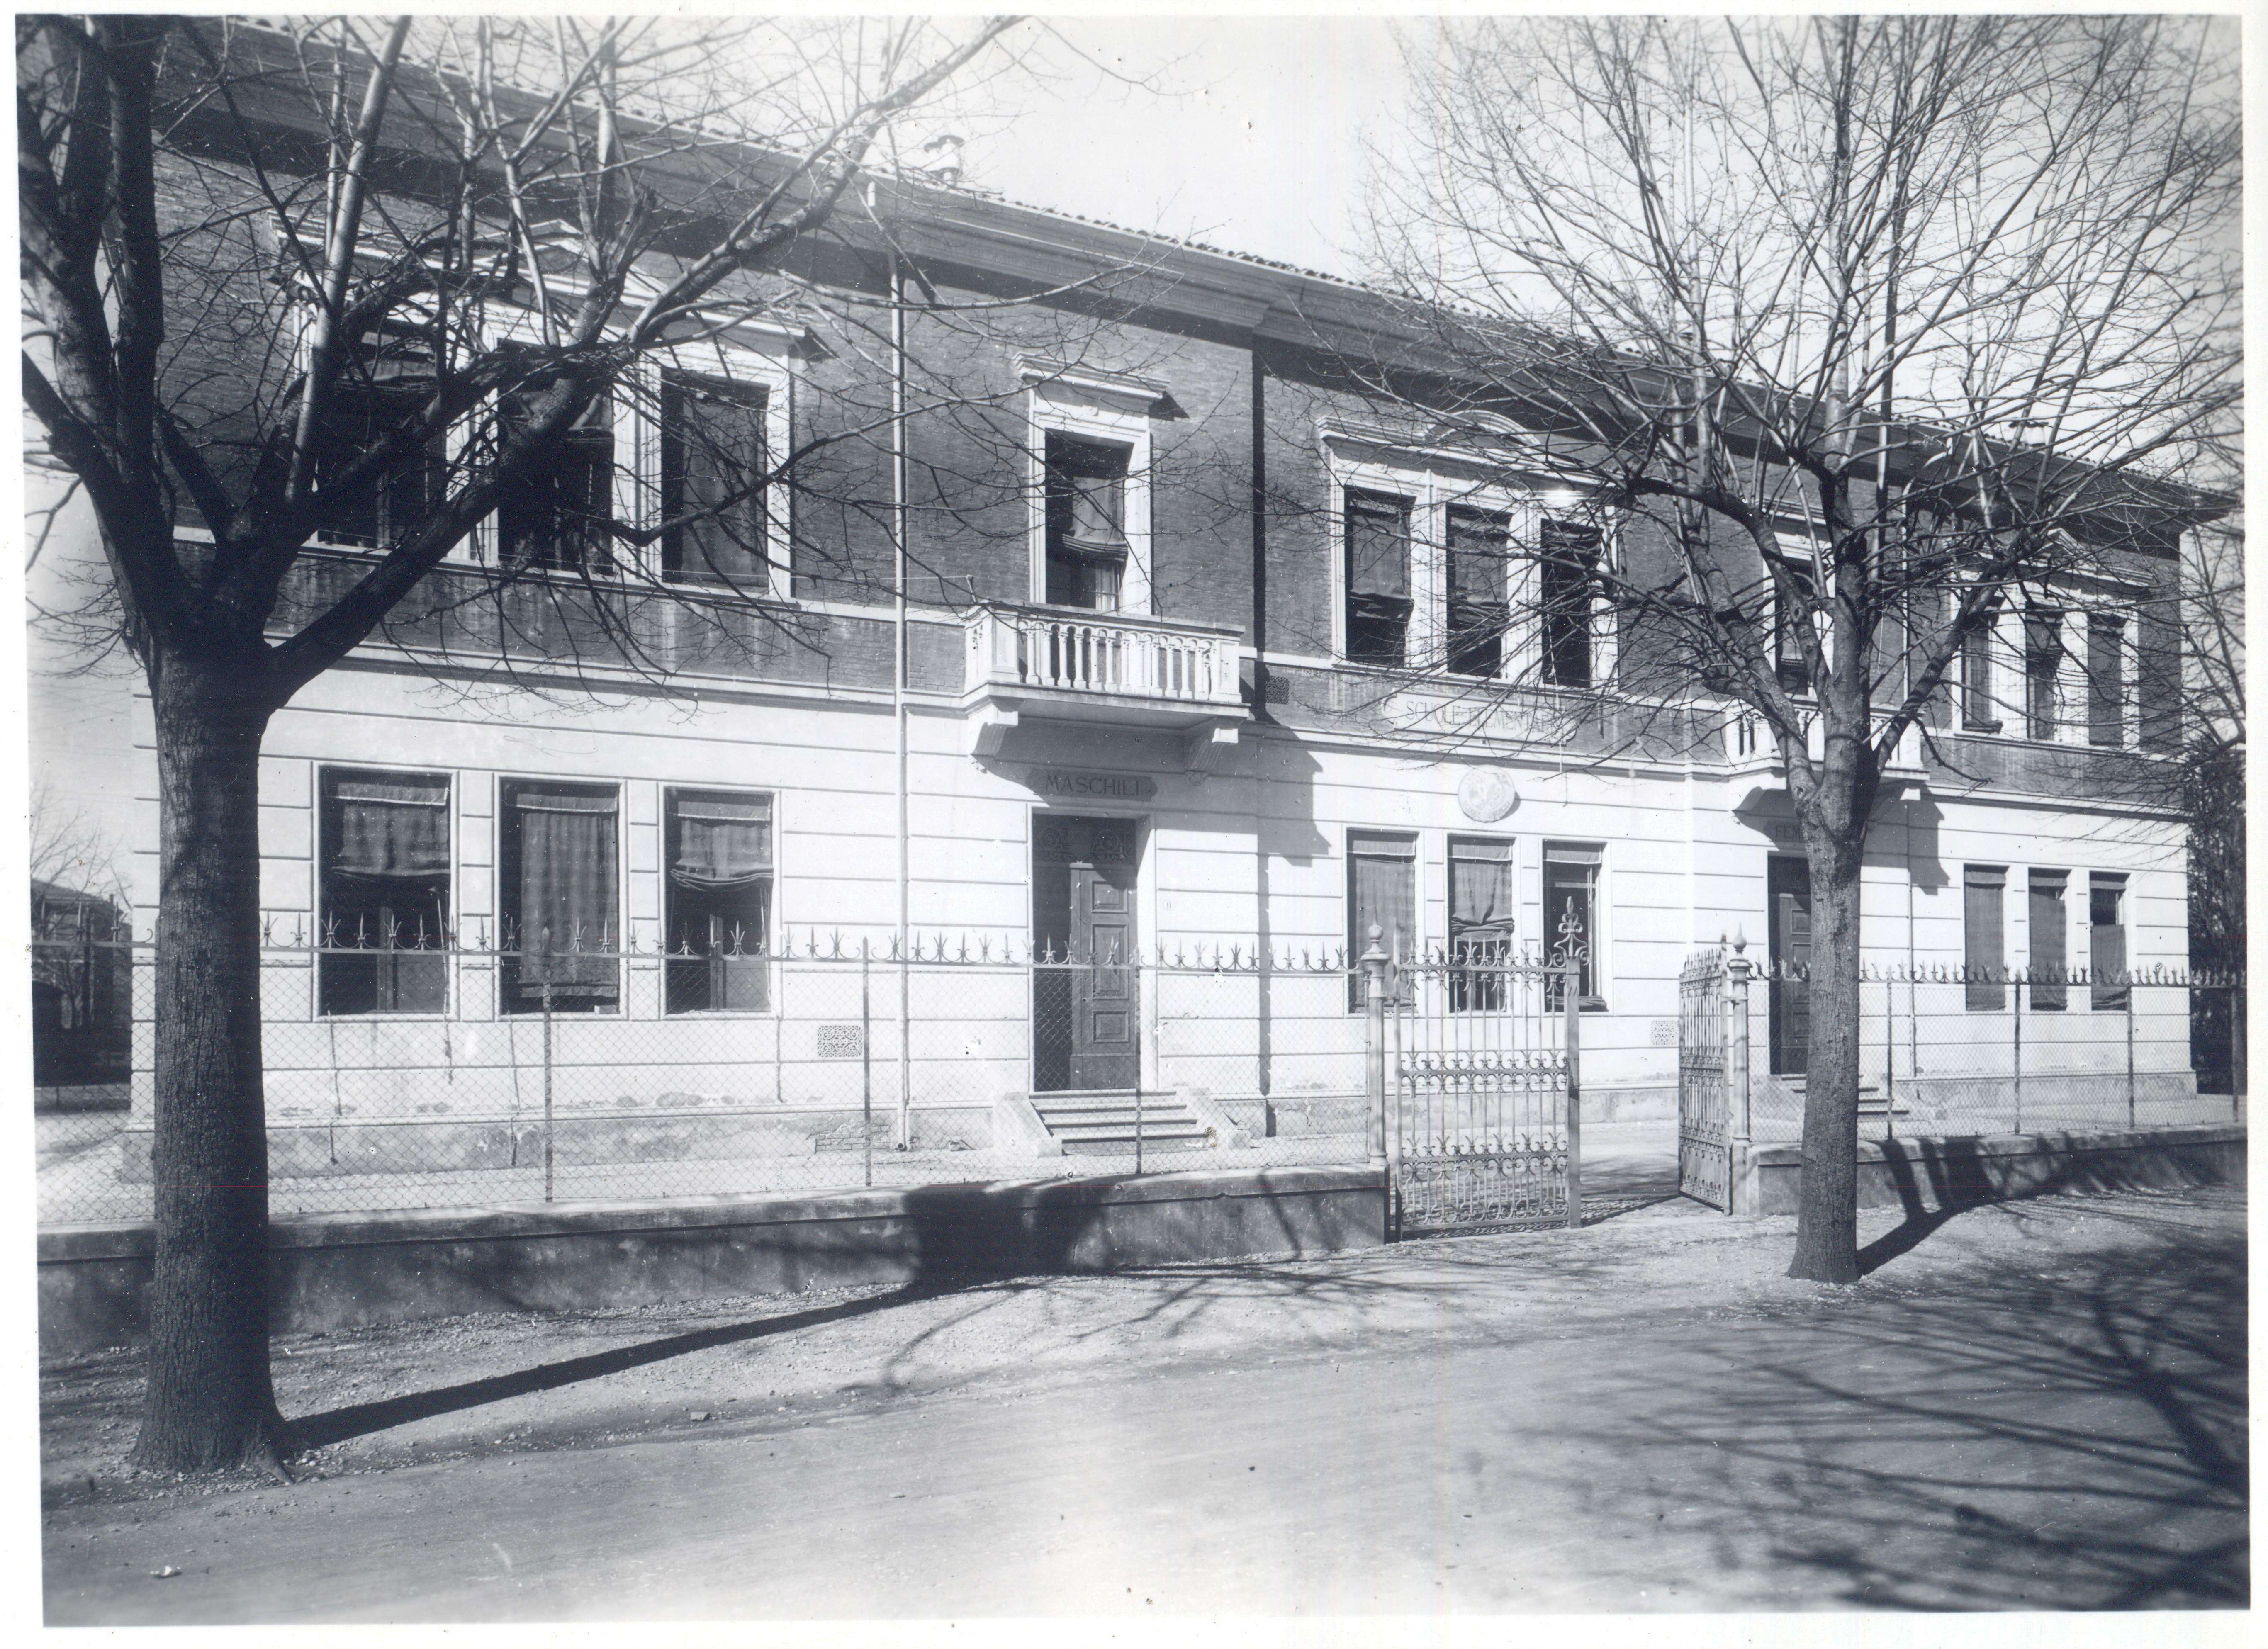 Scuole Carducci di Casalecchio di Reno, 1937 (Biblioteca comunale di Casalecchio di Reno)